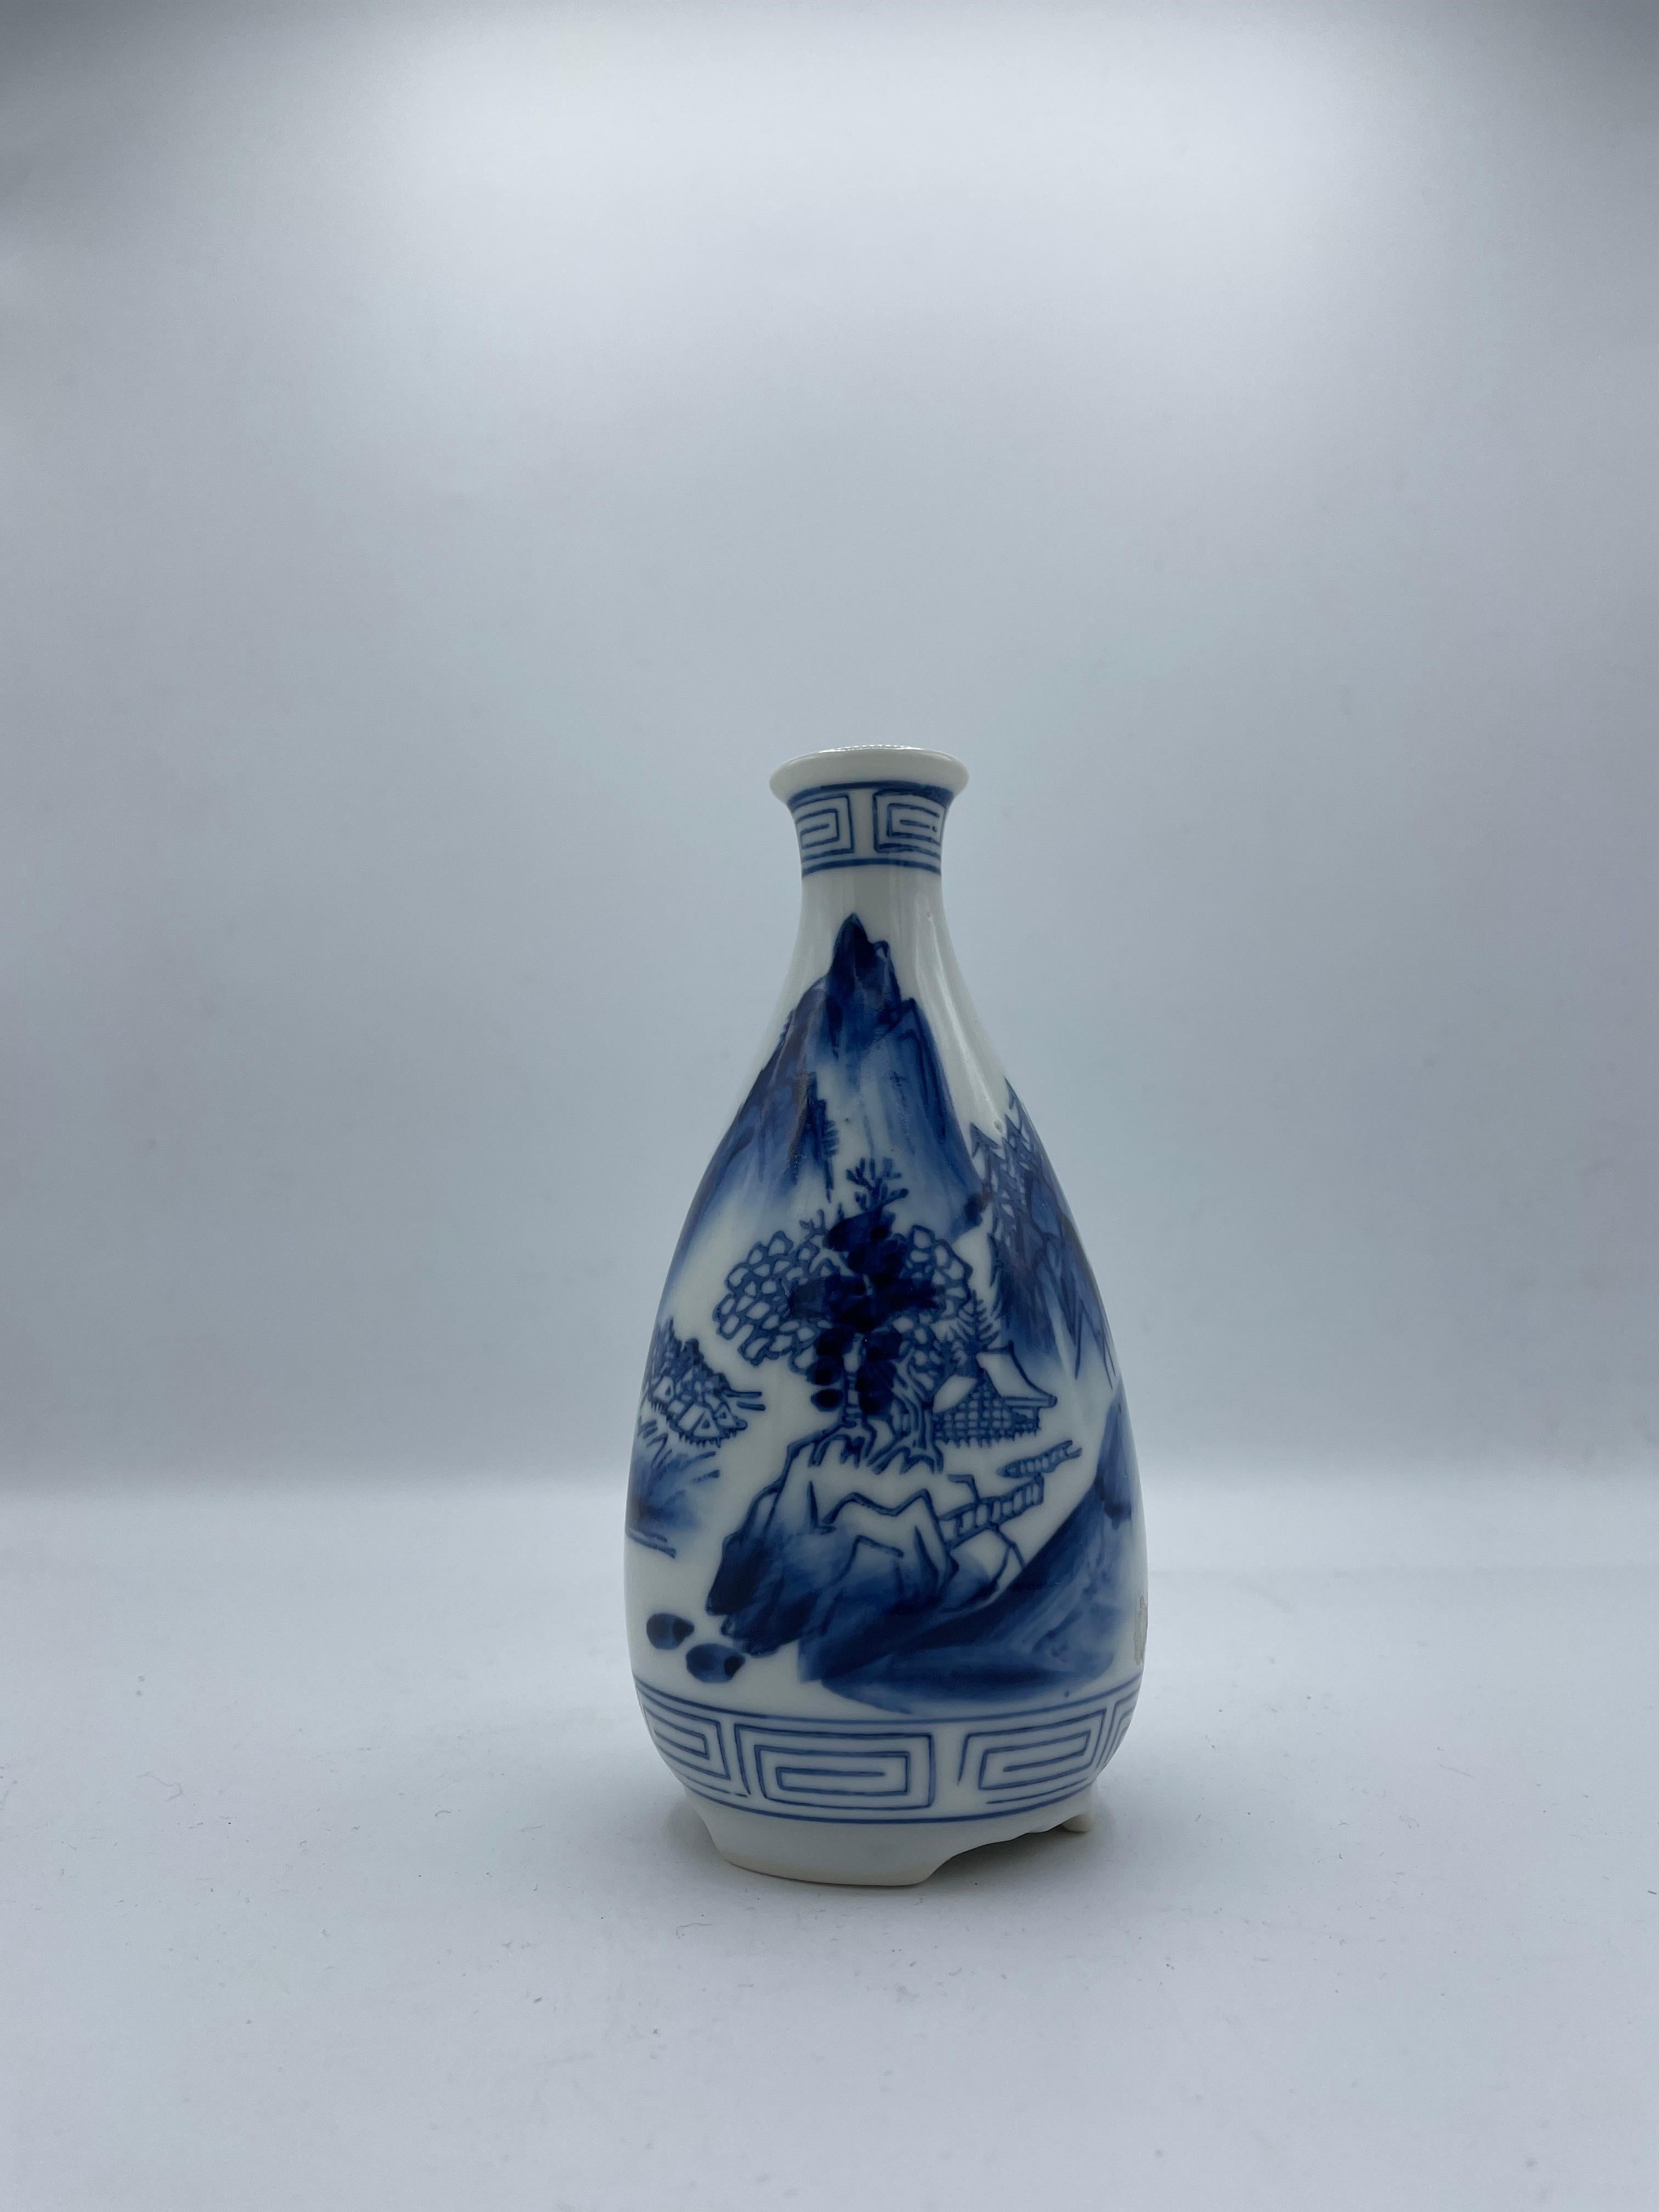 Dies ist eine Sake-Flasche, die auf Japanisch 'tokkuri' genannt wird.
Diese Tokkuri besteht aus Porzellan und ist handbemalt.
Es wurde in der Showa-Ära in den 1940er Jahren hergestellt.
Das Design ist die Landschaft des japanischen Berges und das